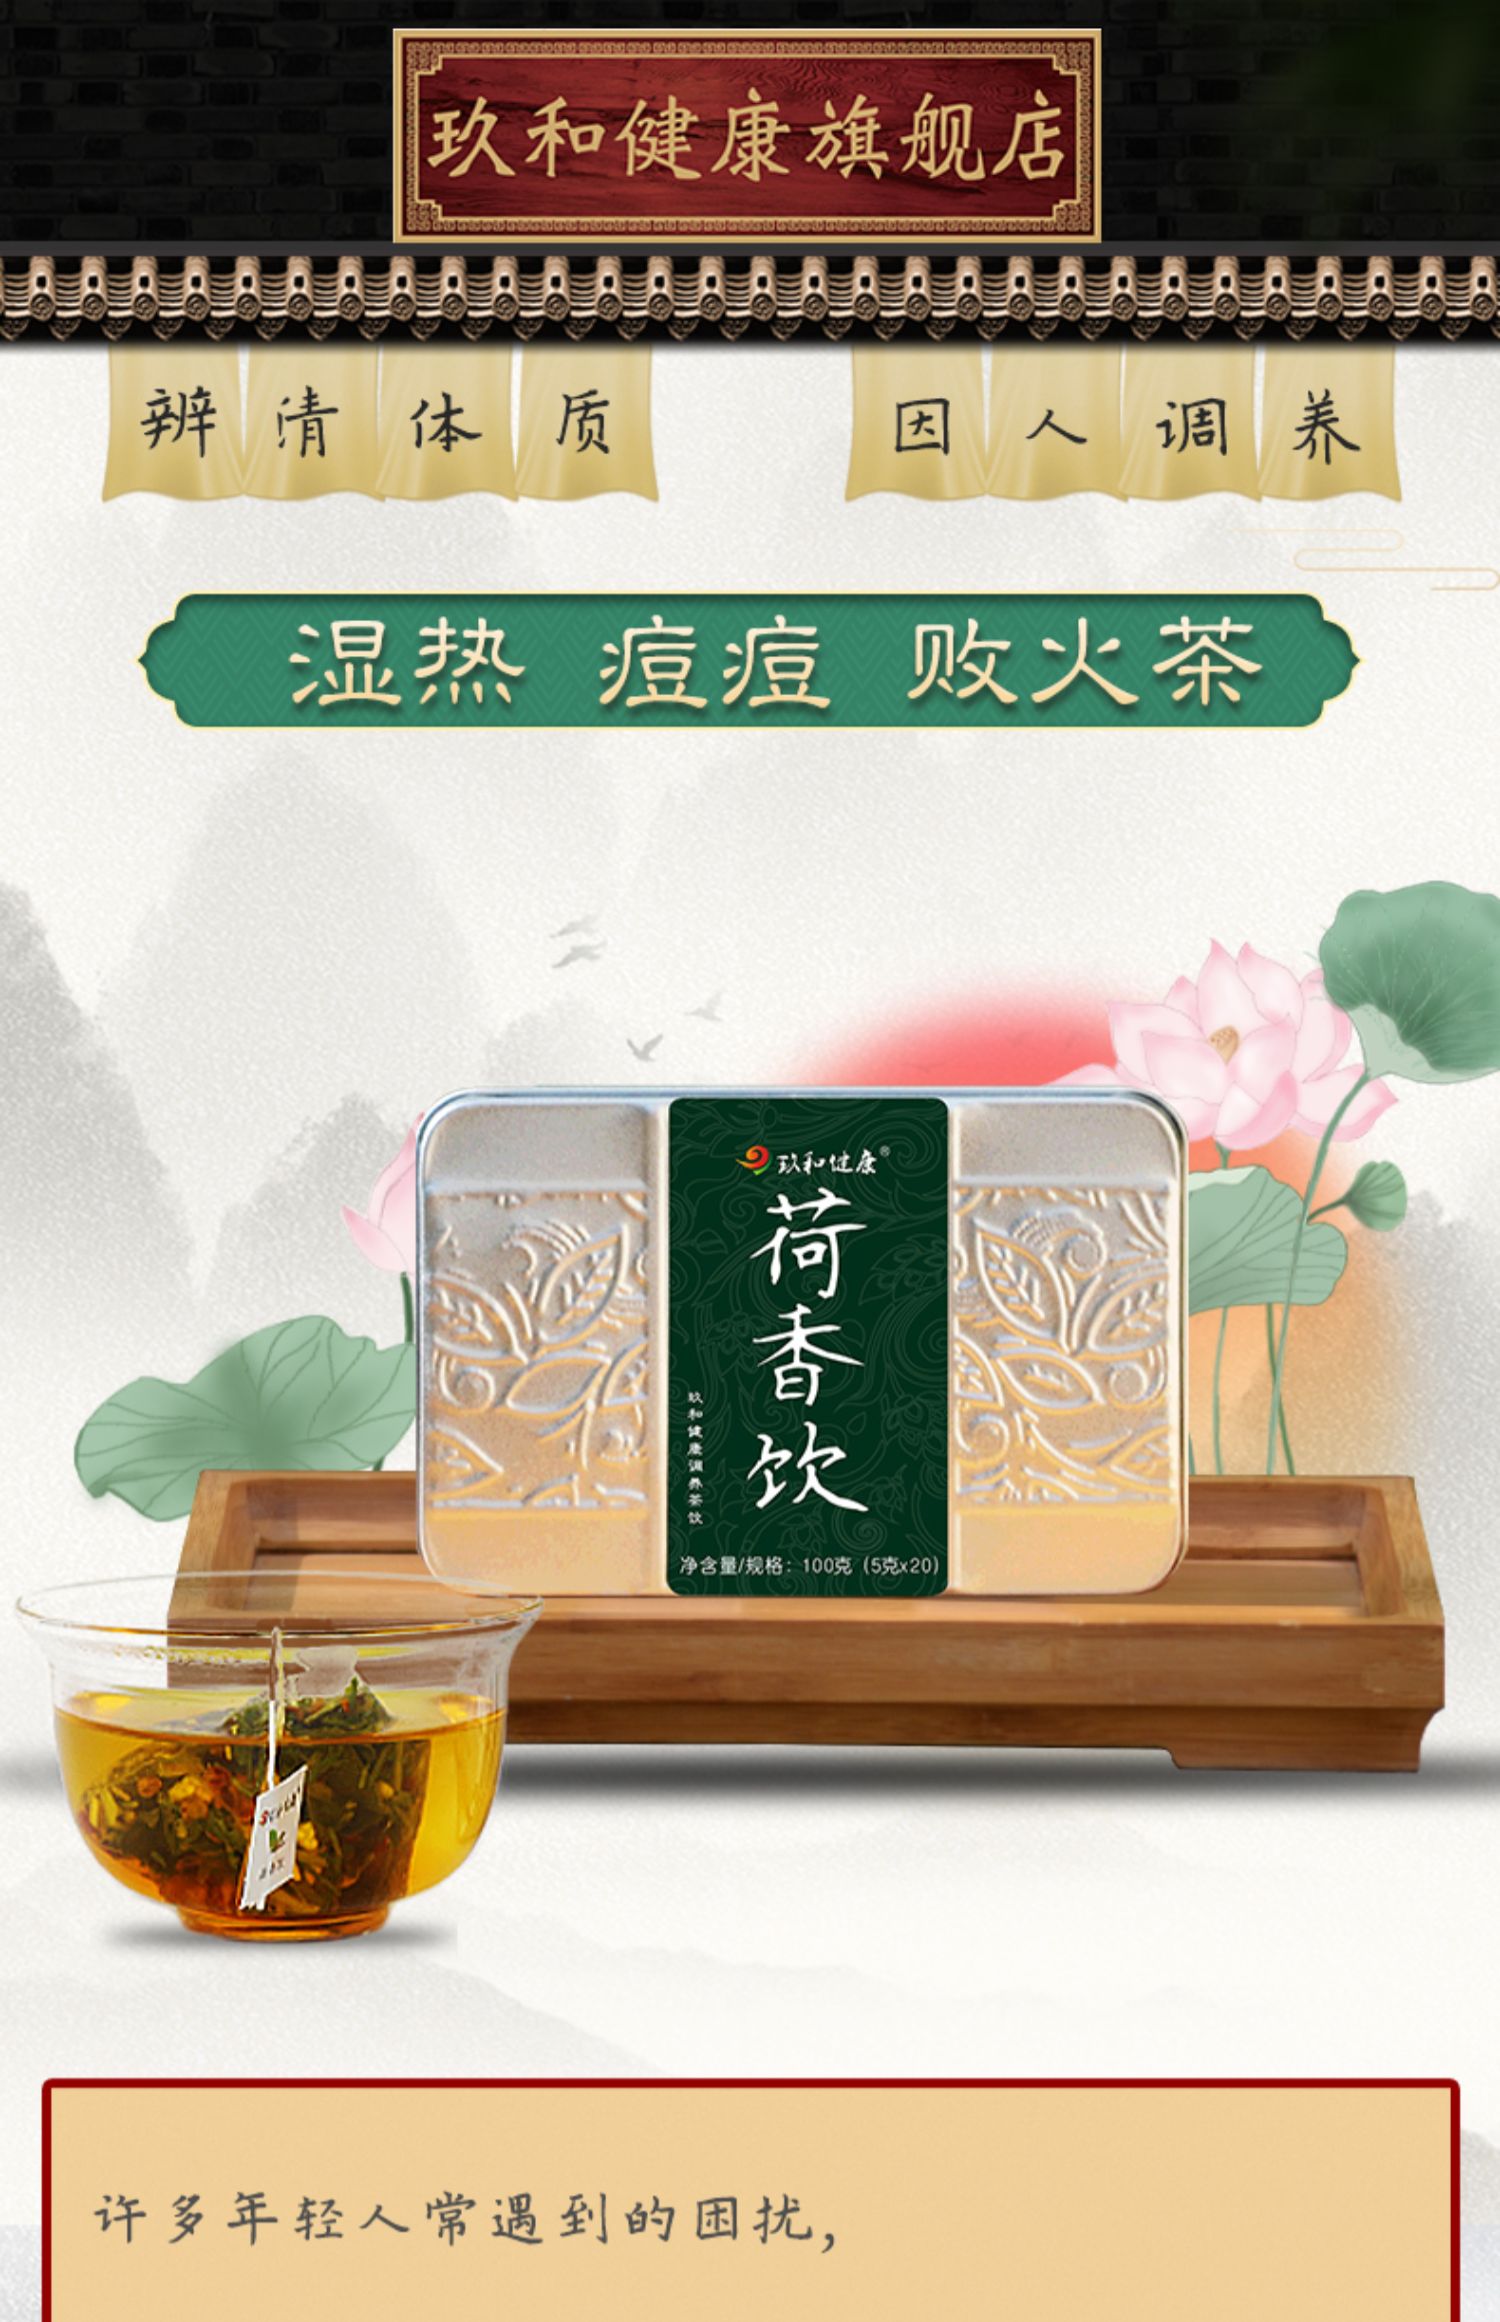 【玖和健康】荷香饮湿热体质养生茶